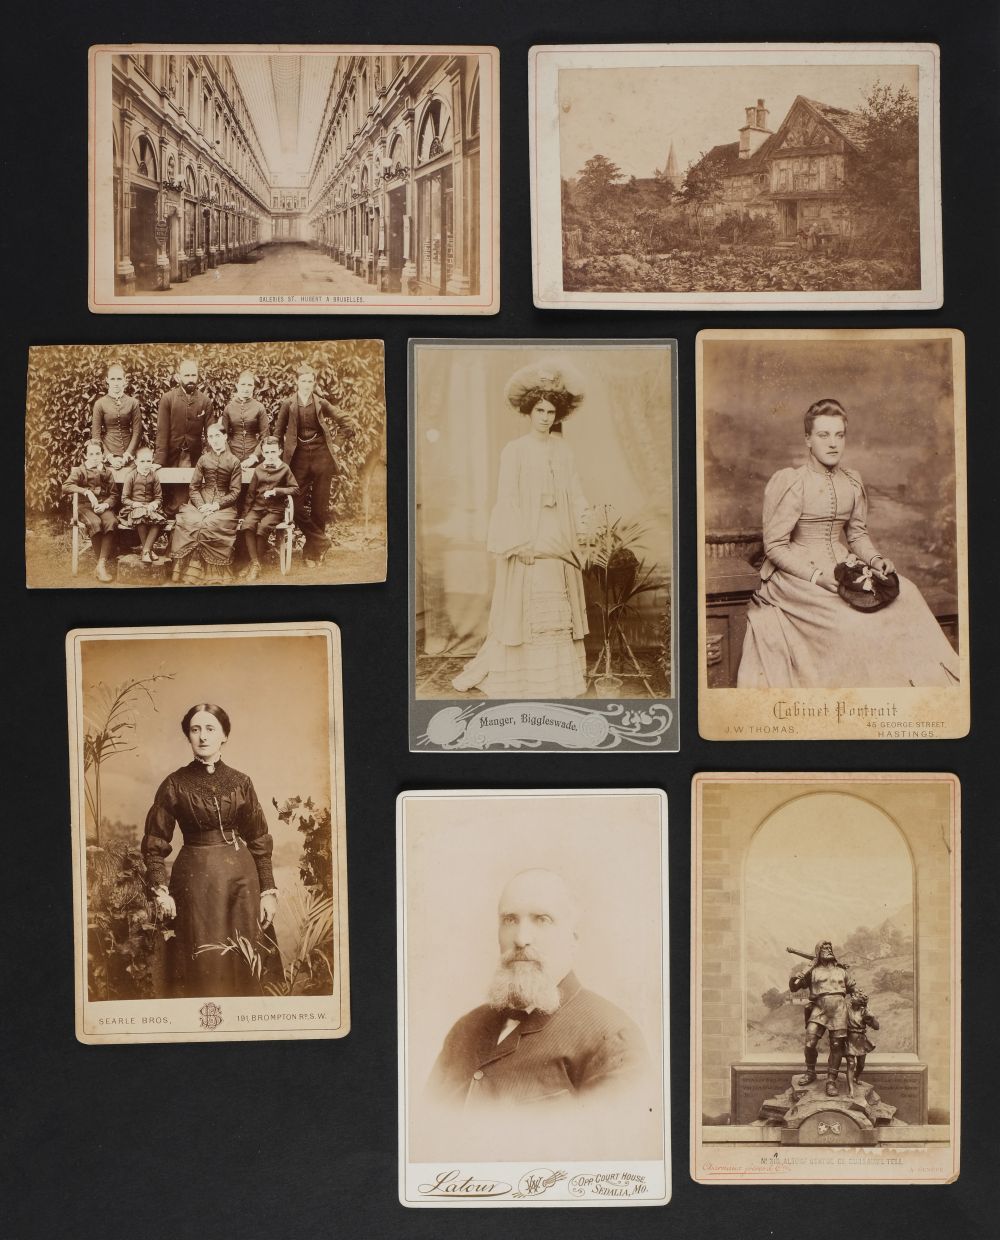 * Cartes de visite. A large collection of approximately 750 cartes de visite, c. 1860s/1880s